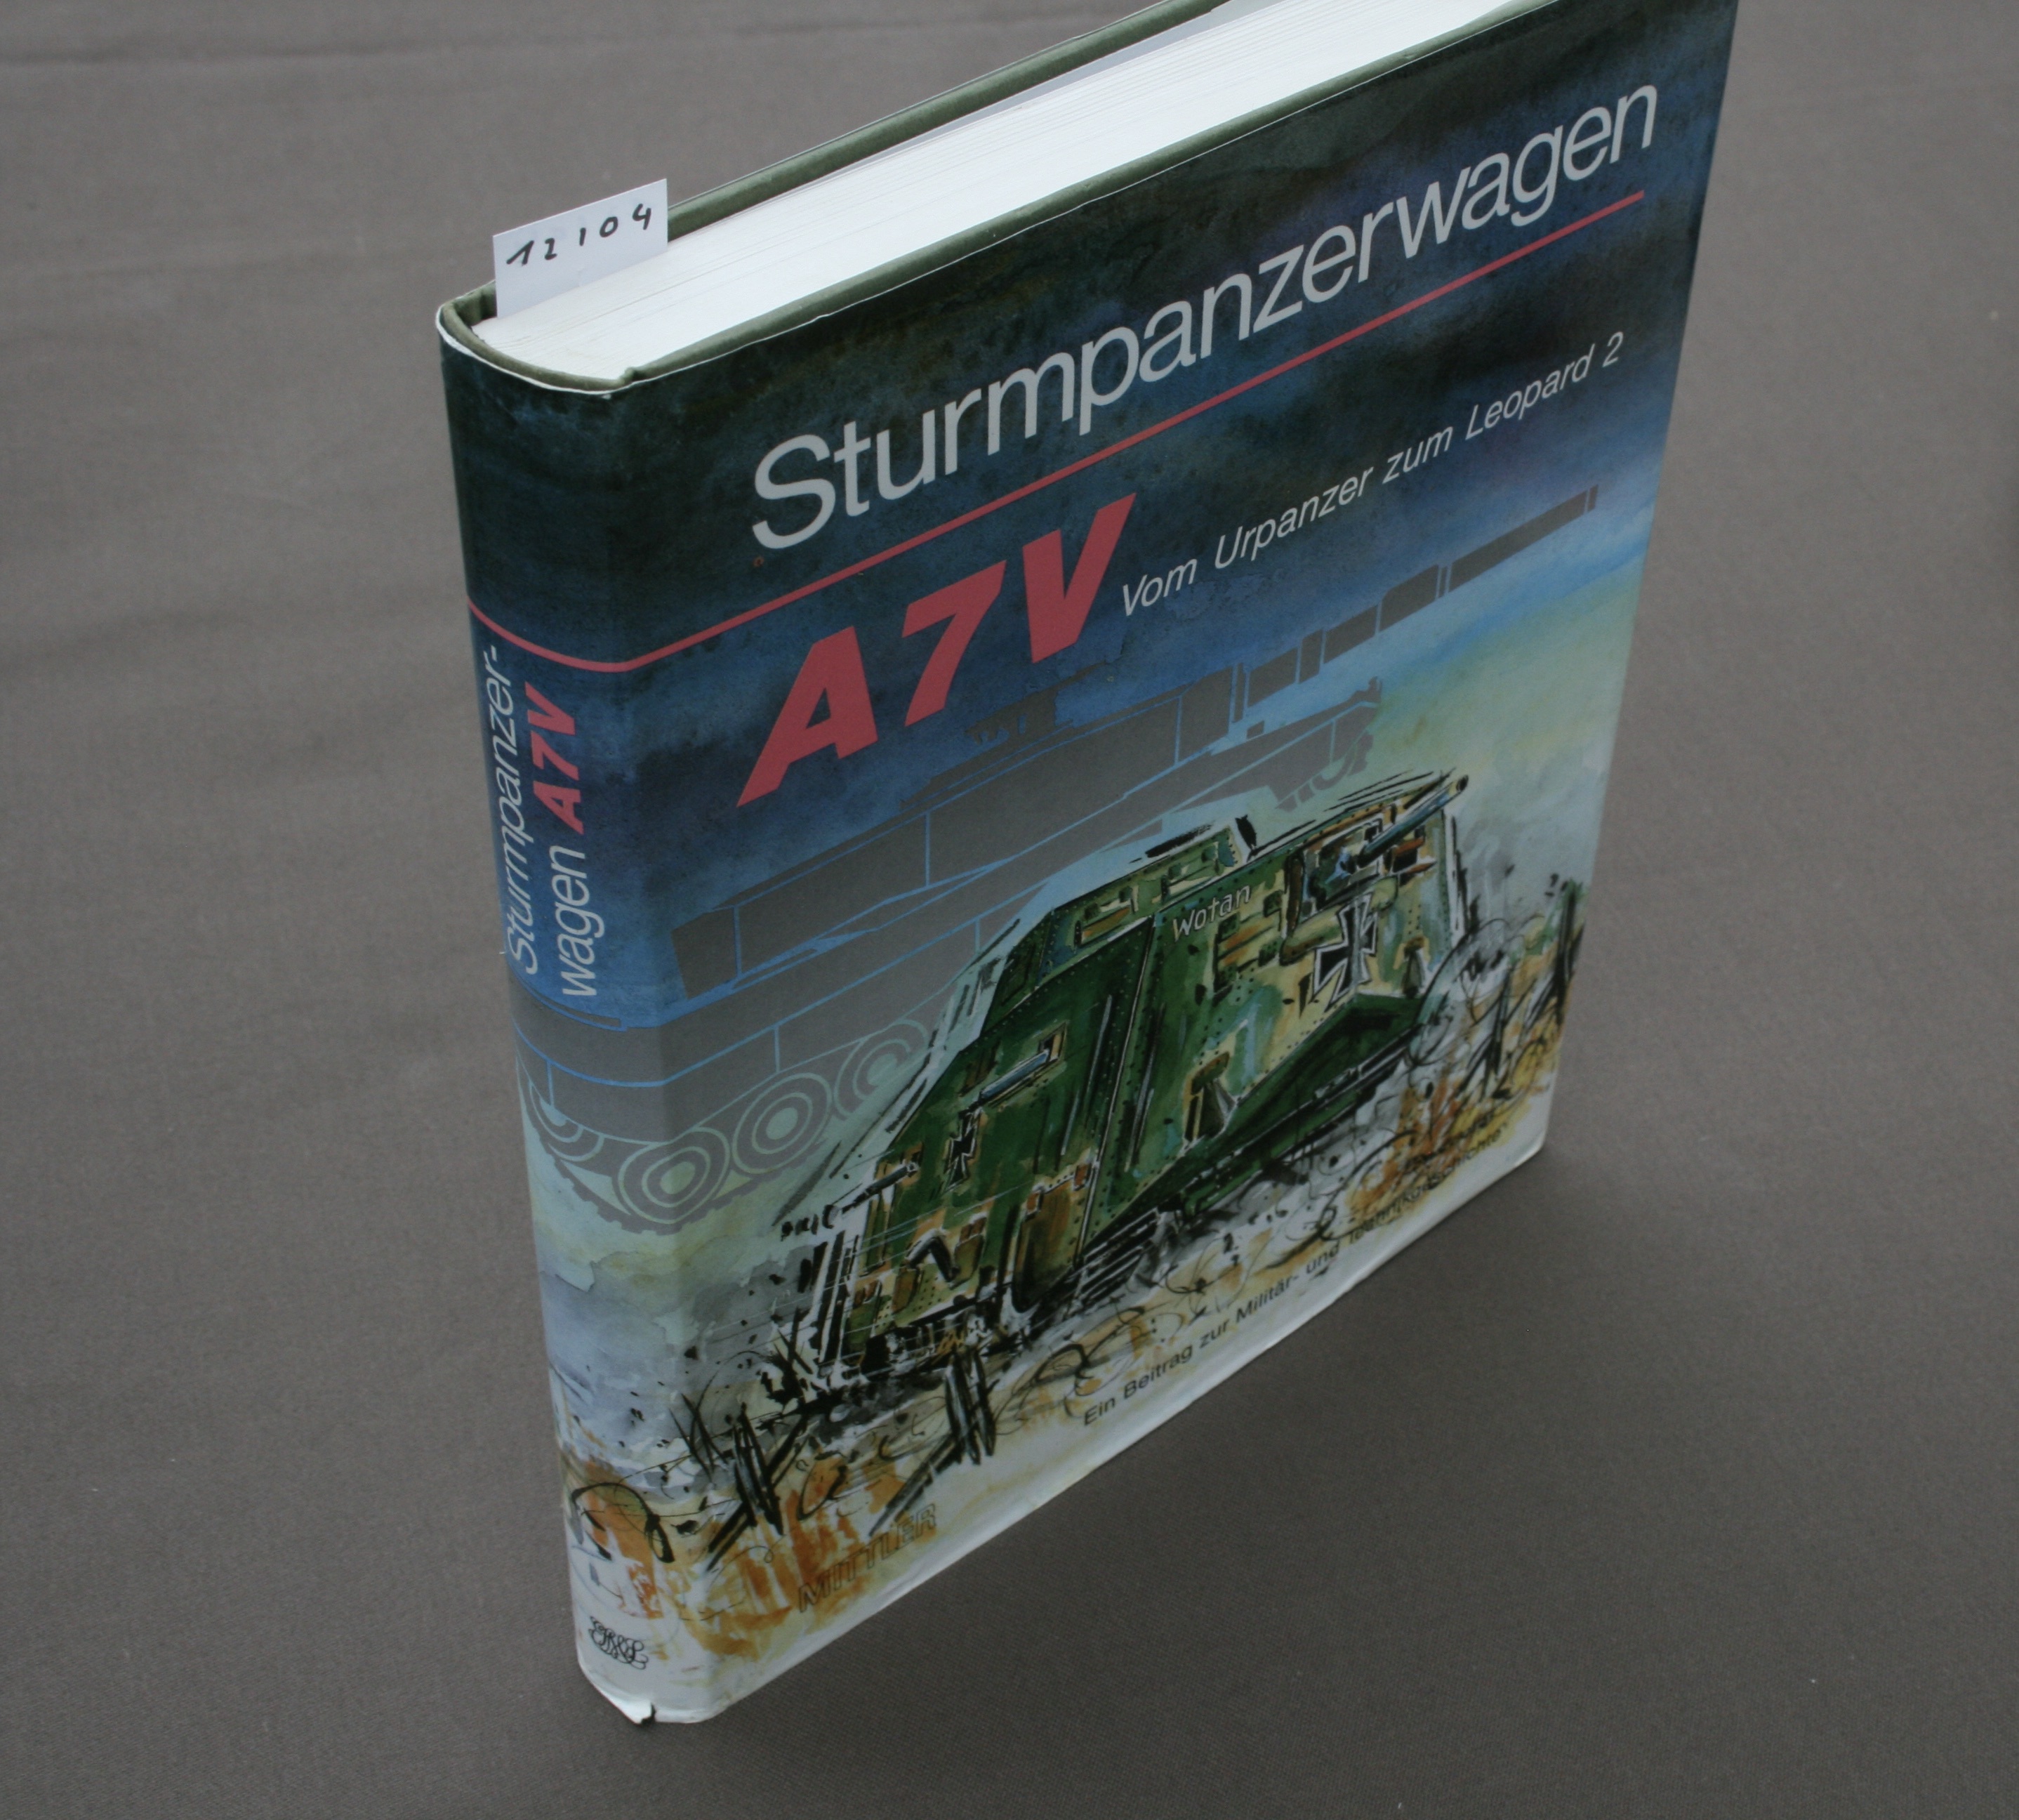 Sturmpanzerwagen A 7 V. Vom Urpanzer zum Leopard 2. Ein Beitrag zur Militär- und Technikgeschichte. - Walle, Heinrich